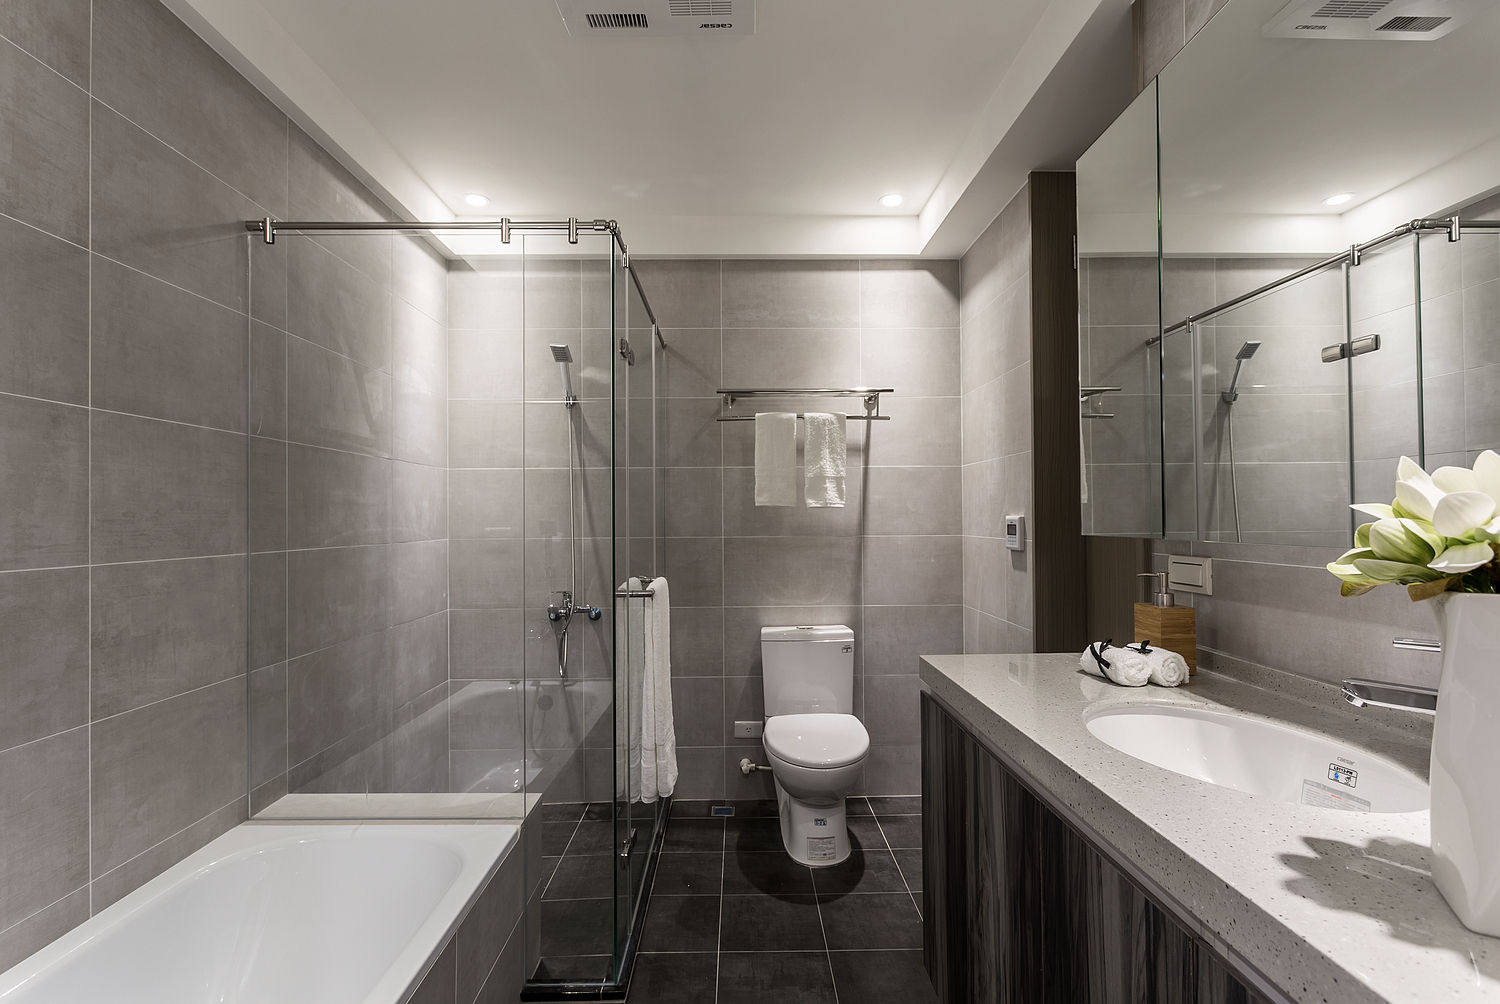 日光為題 漏水公寓的幸福新貌, E&C創意設計有限公司 E&C創意設計有限公司 Minimalist style bathrooms